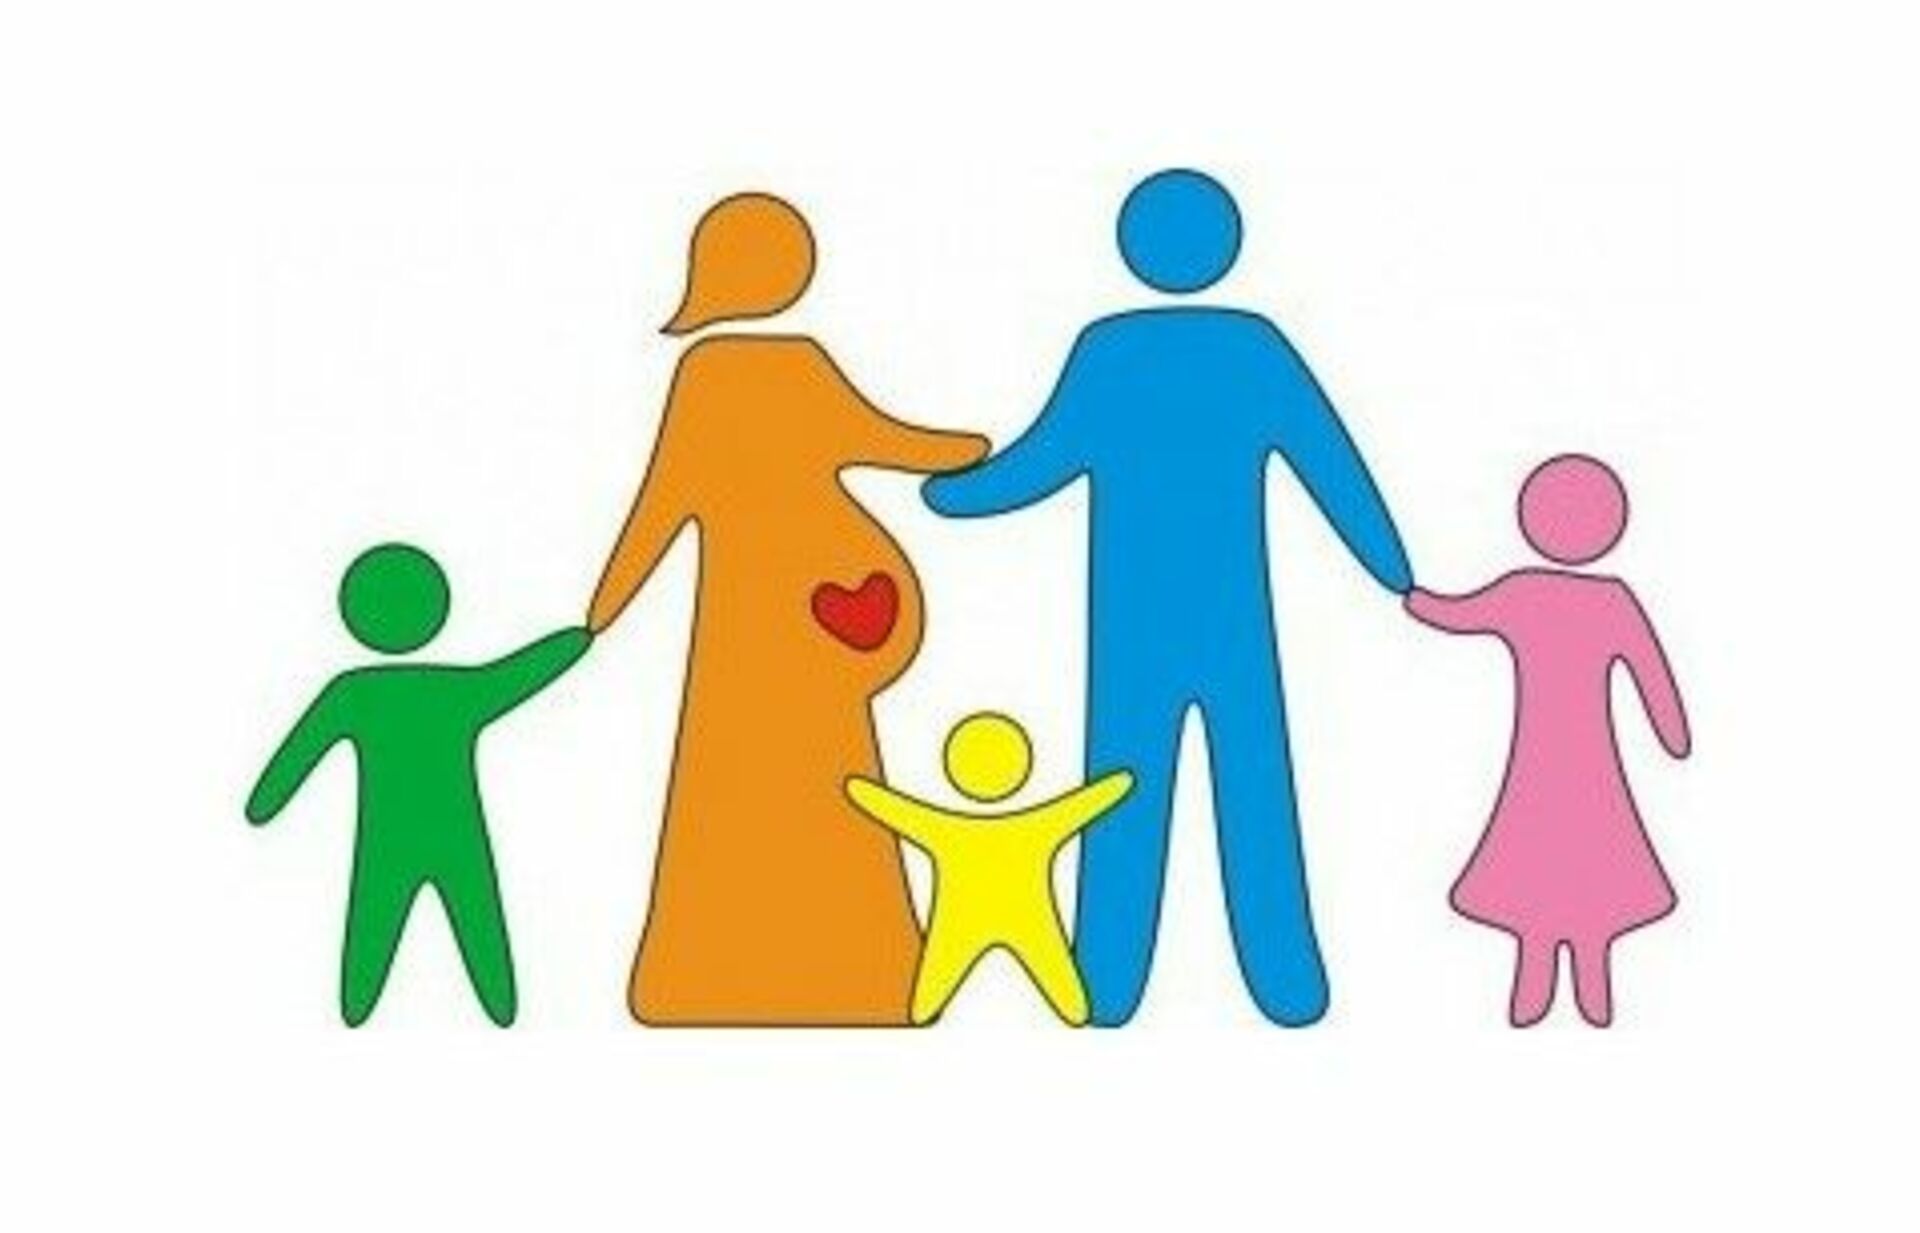 Меры социальной поддержки гражданам имеющим детей. Меры социальной поддержки семей с детьми. Социальное обеспечение детей. Социальная поддержка многодетных семей. Социальная защита семей с детьми.